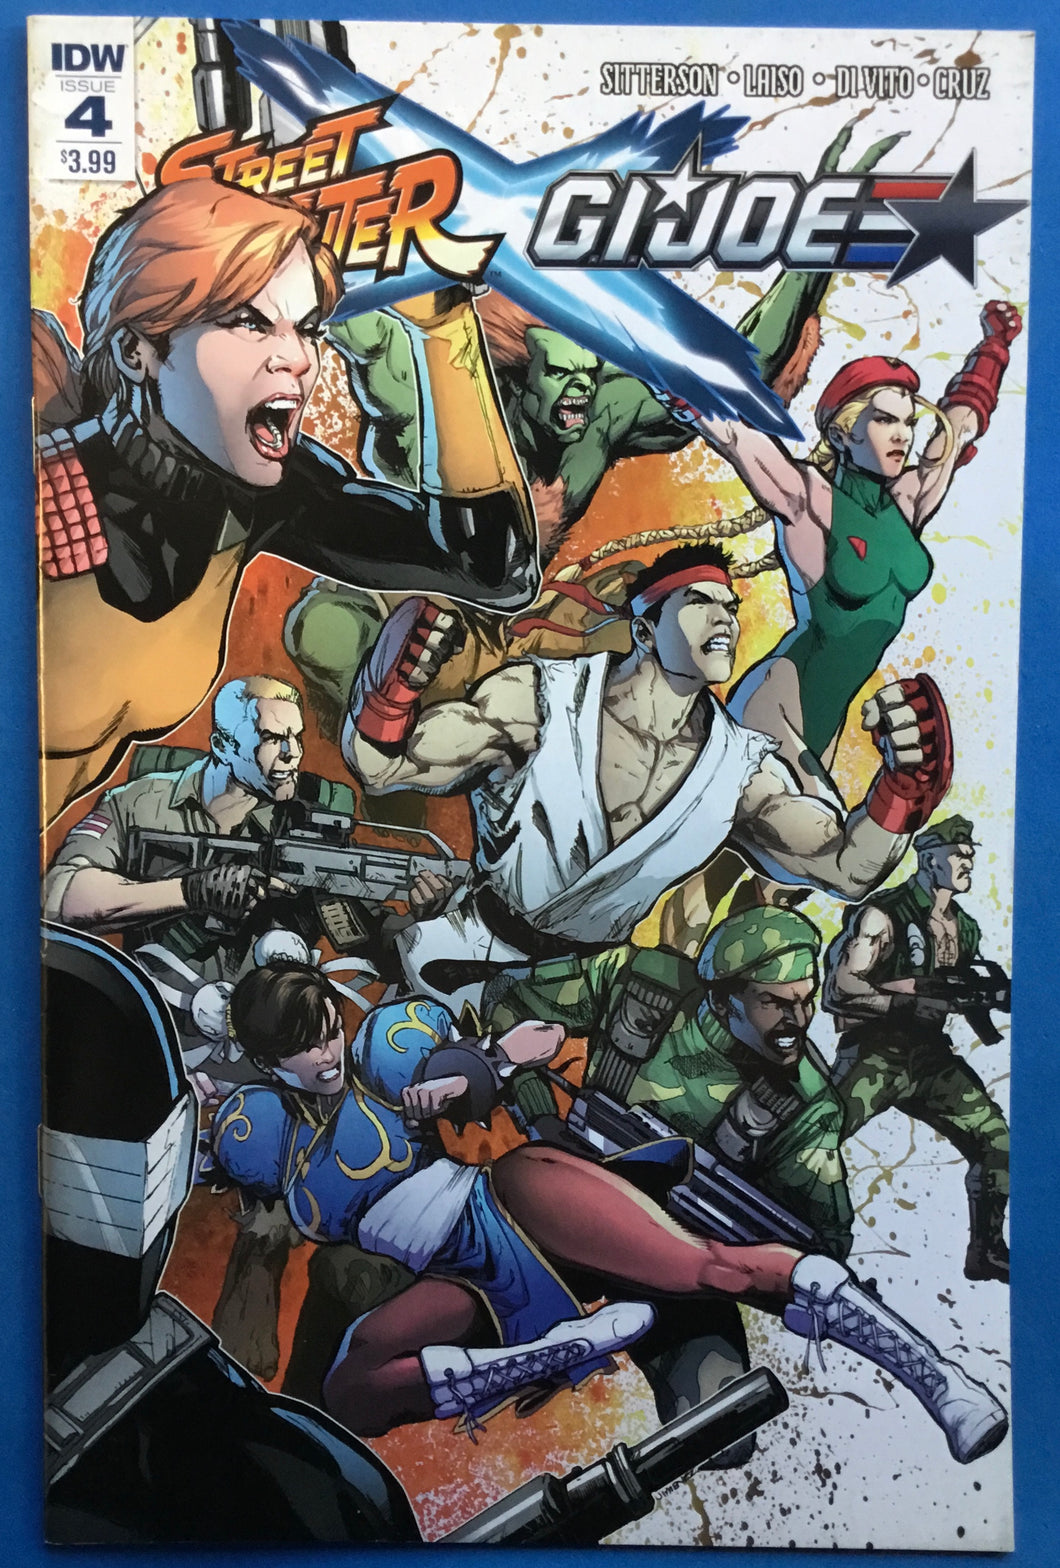 Street Fighter x G.I. Joe No. #4 2016 IDW Comics